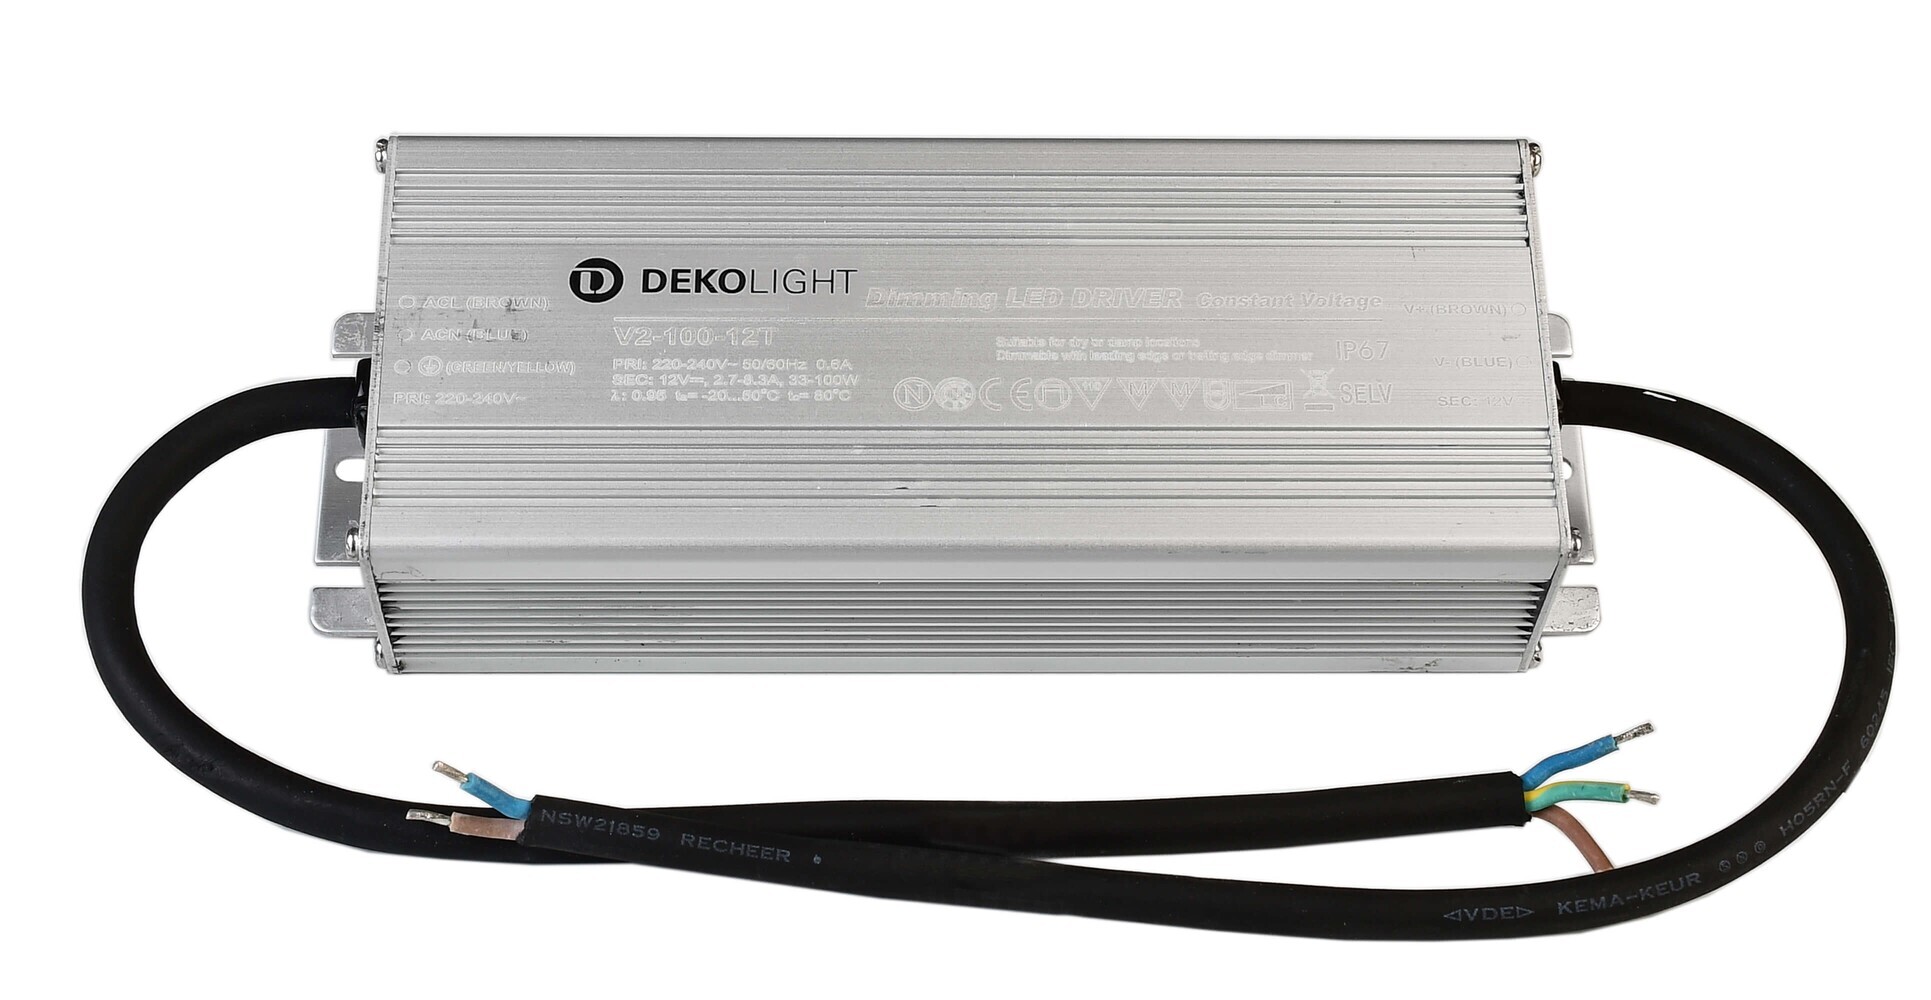 Hochwertiges, dimmbares spannungskonstantes LED Netzteil von Deko-Light